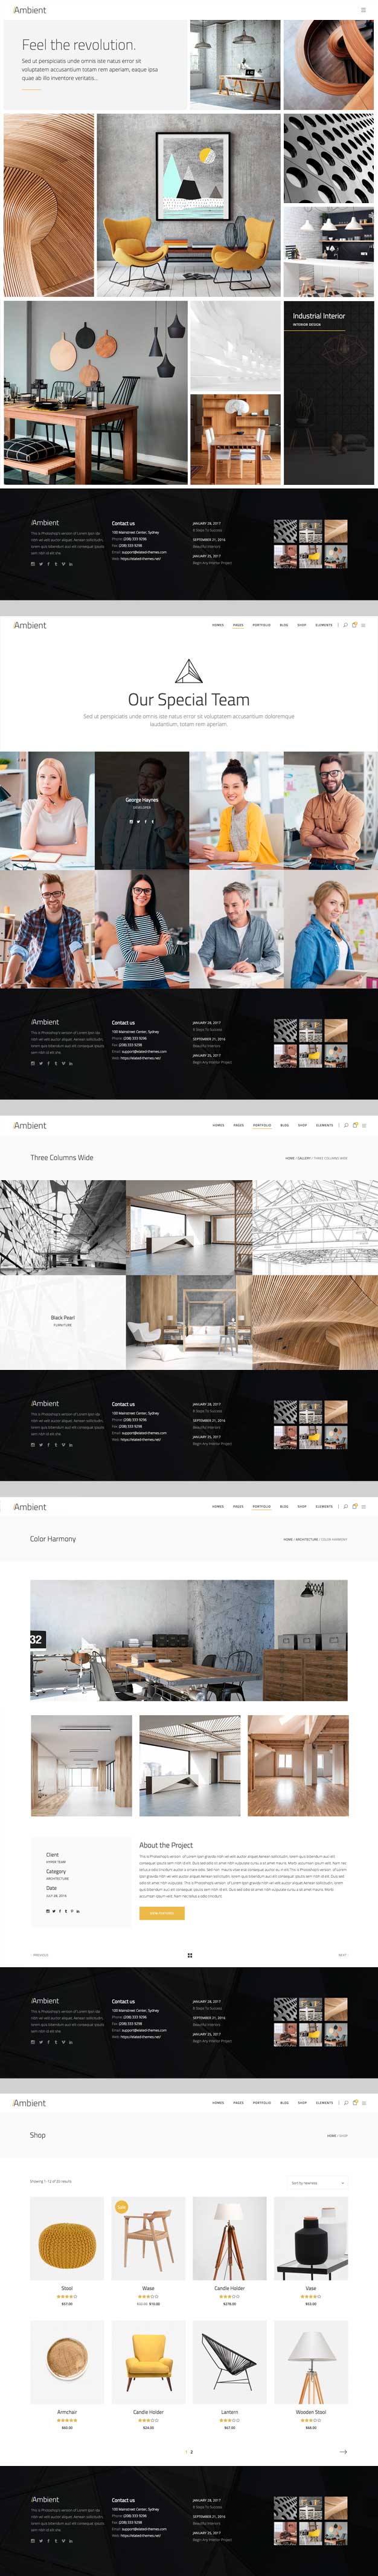 Ambient - Tema WordPress para web conteporánea de arquitectura e interiorismo